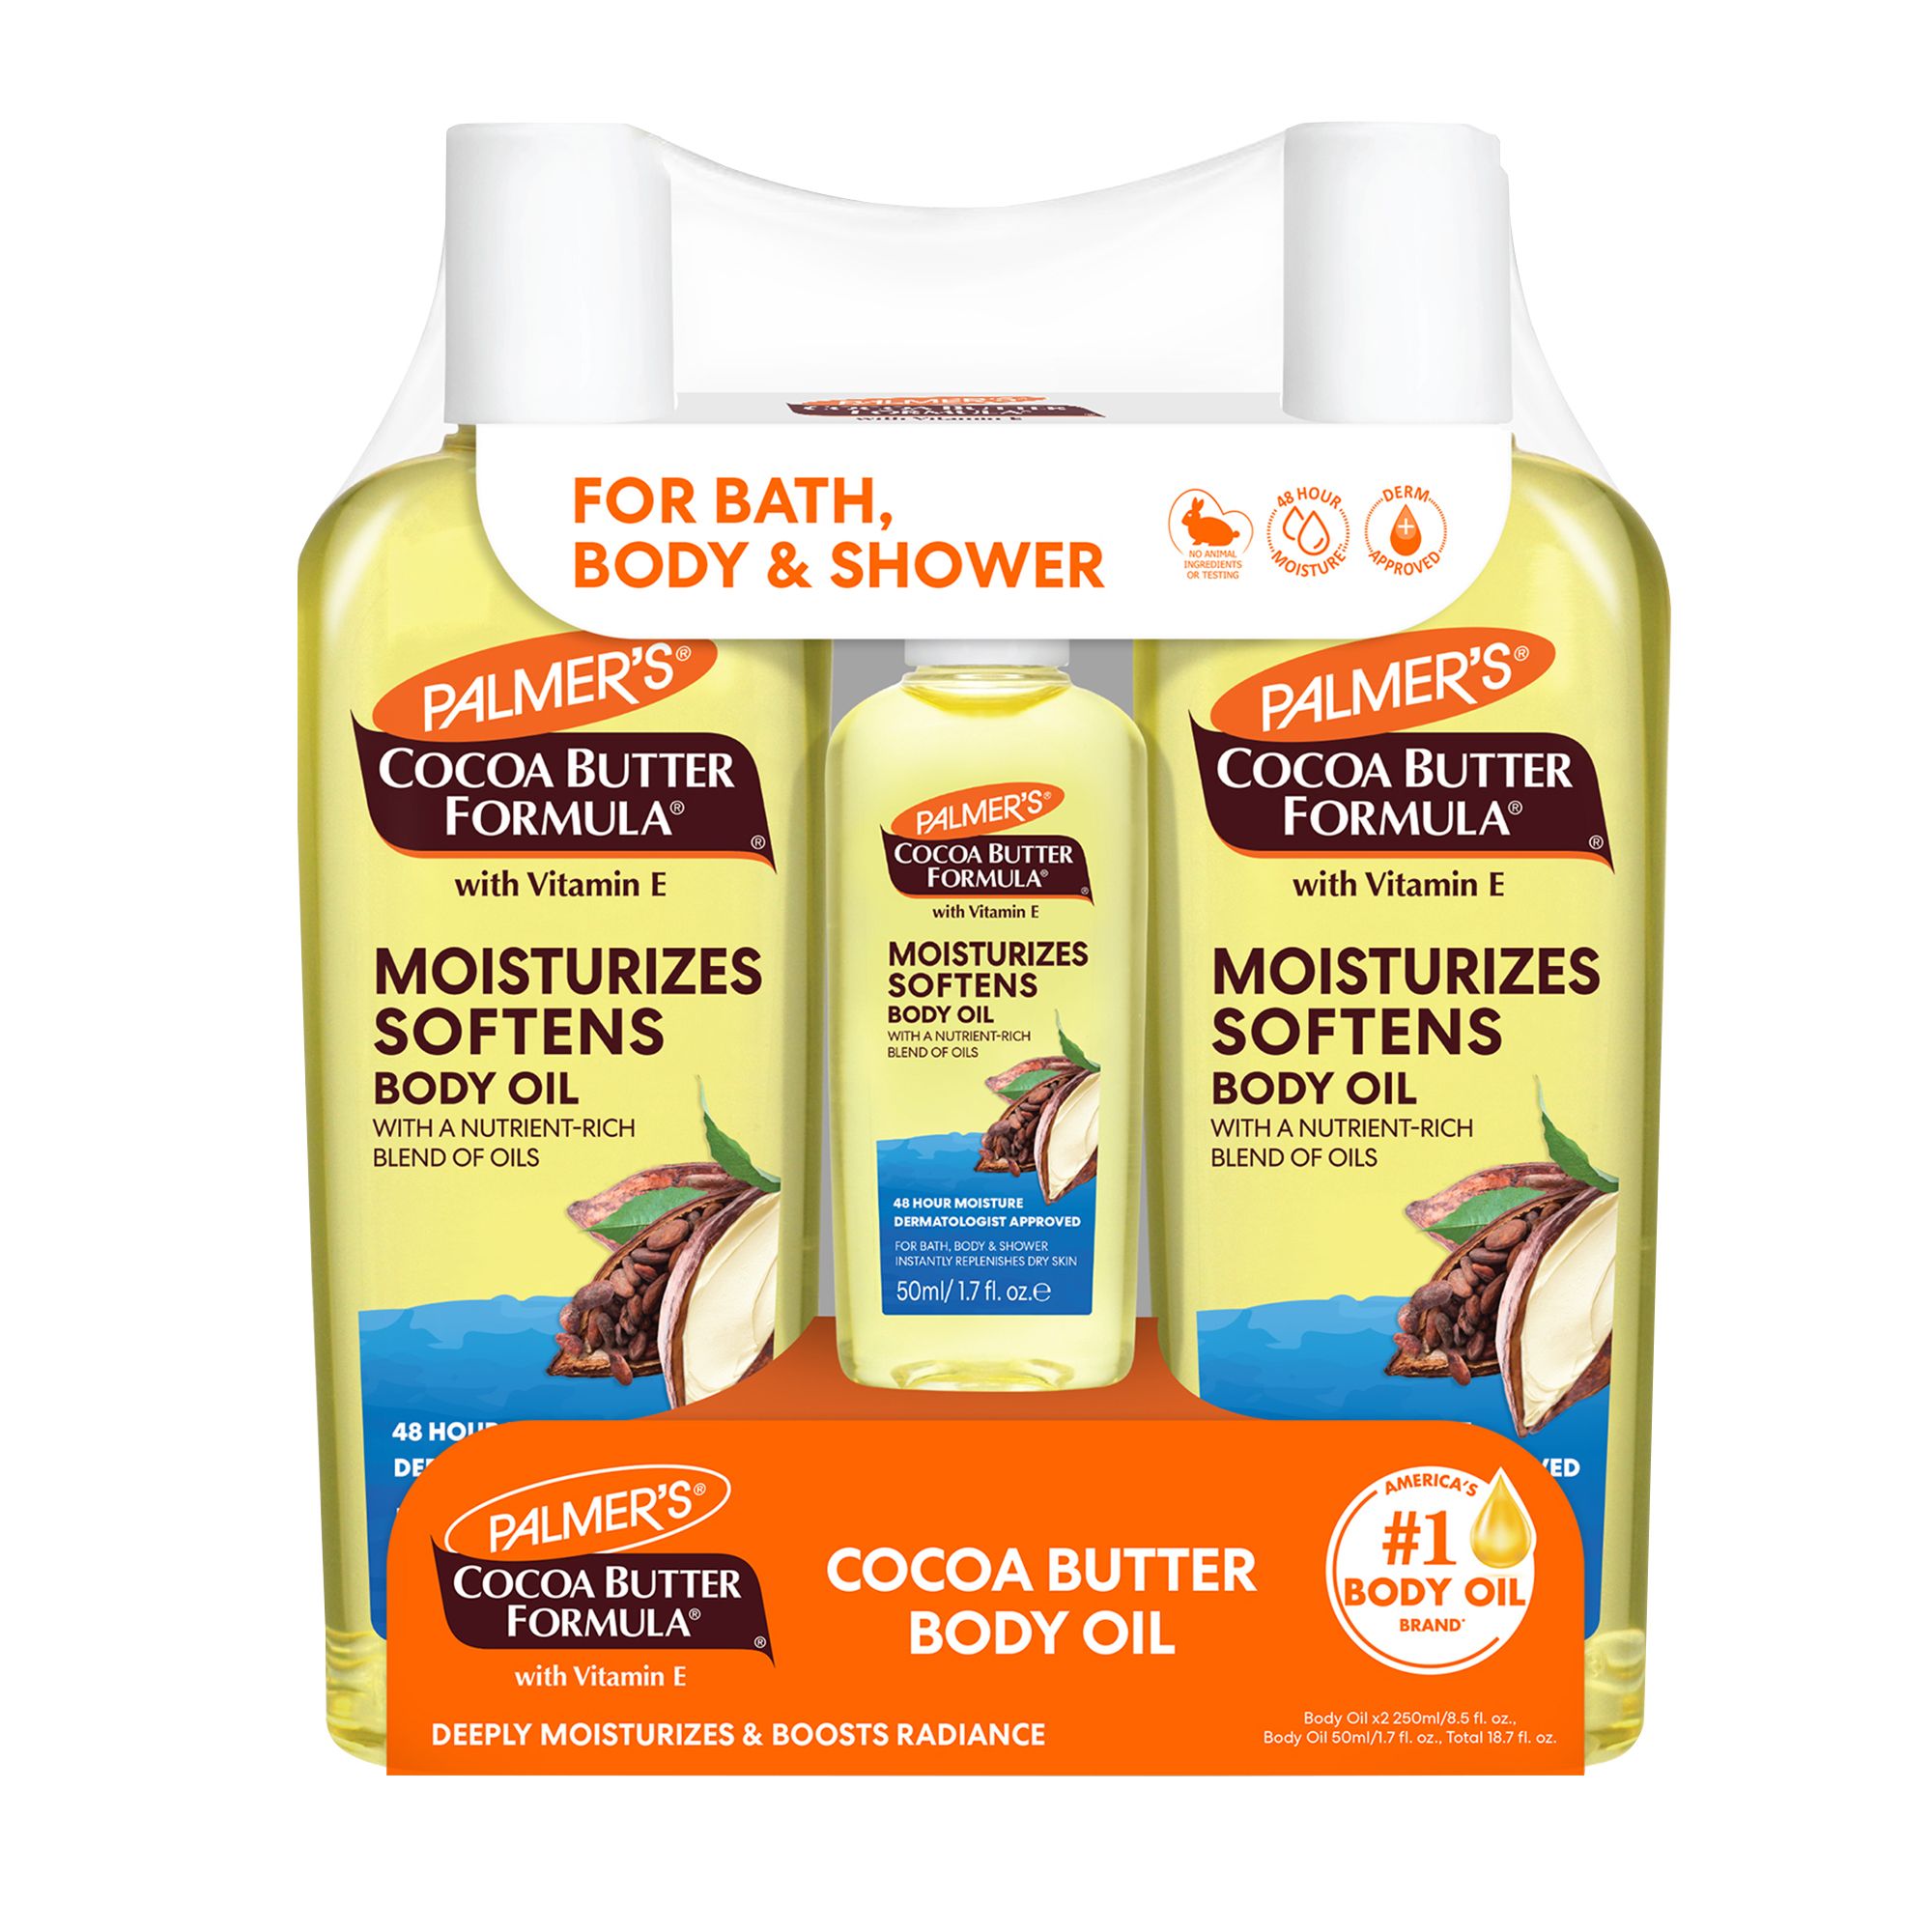 Palmer's Cocoa Butter Formula MEN Body & Face Lotion (8.5 oz